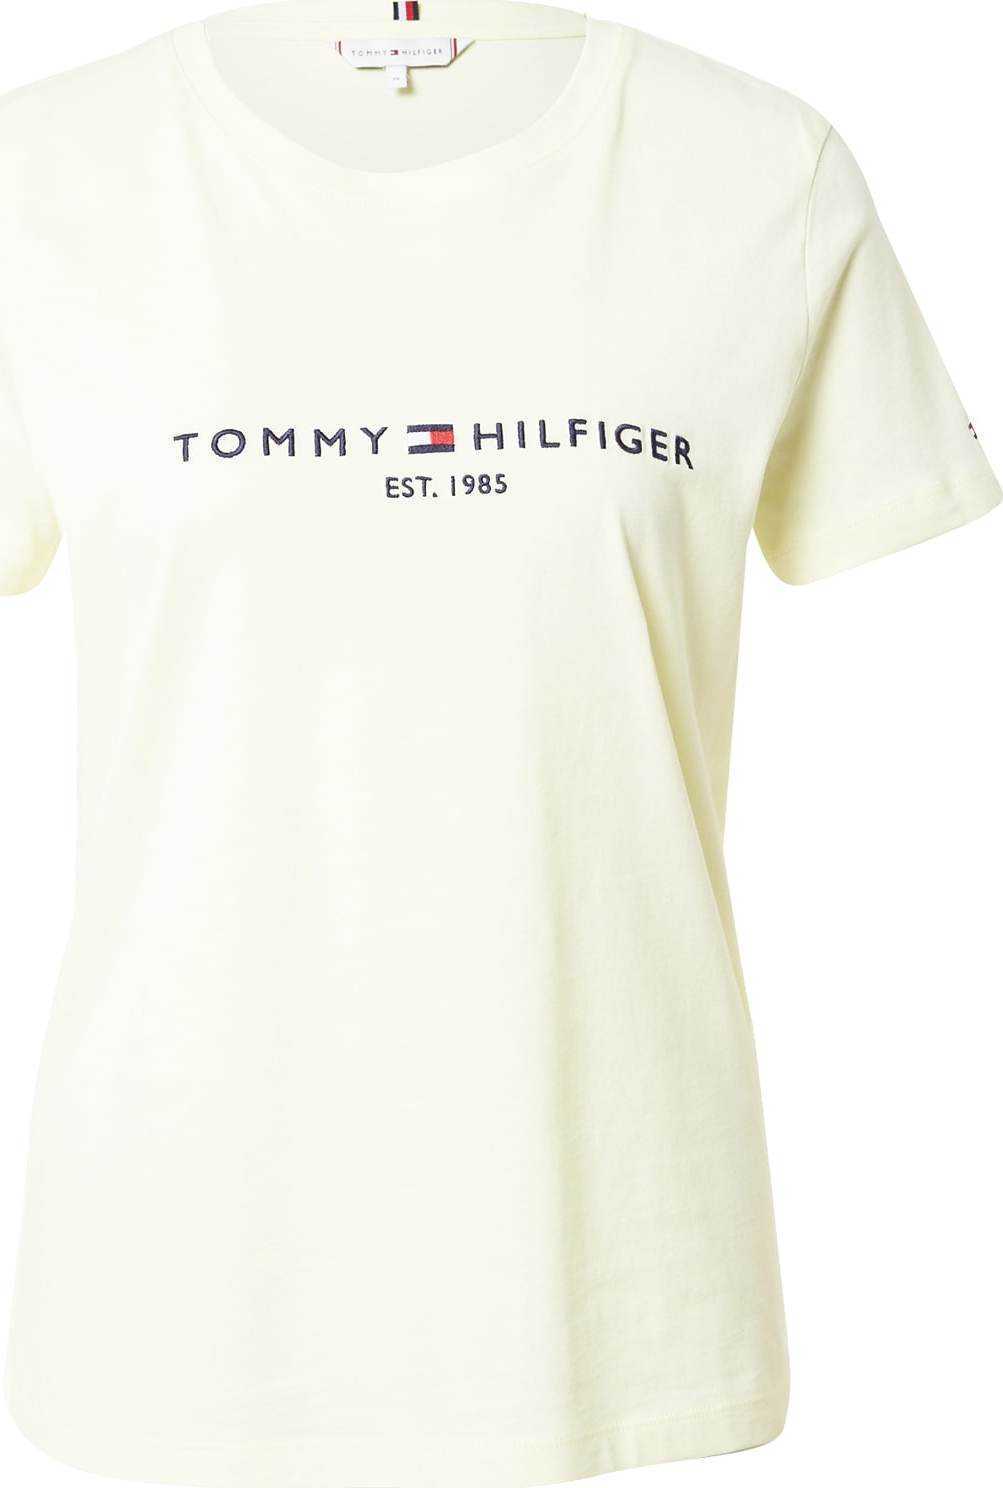 TOMMY HILFIGER Tričko tmavě modrá / pastelově žlutá / světle červená / bílá